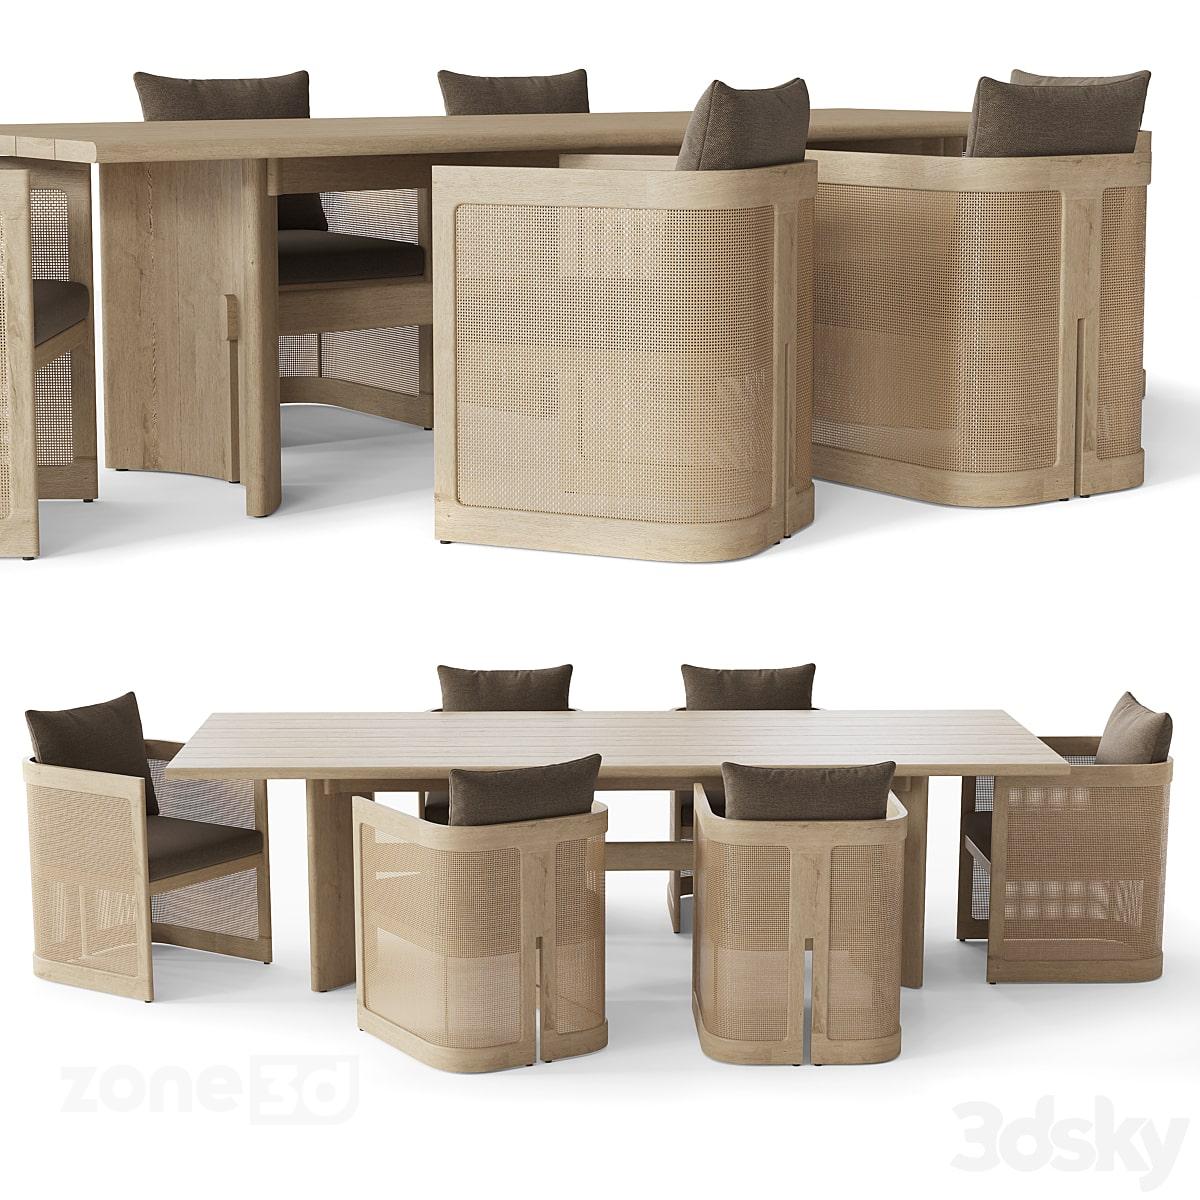 آبجکت میز مستطیل چوبی مدرن غذاخوری با صندلی پارچه ای و حصیریRH TRIESTE